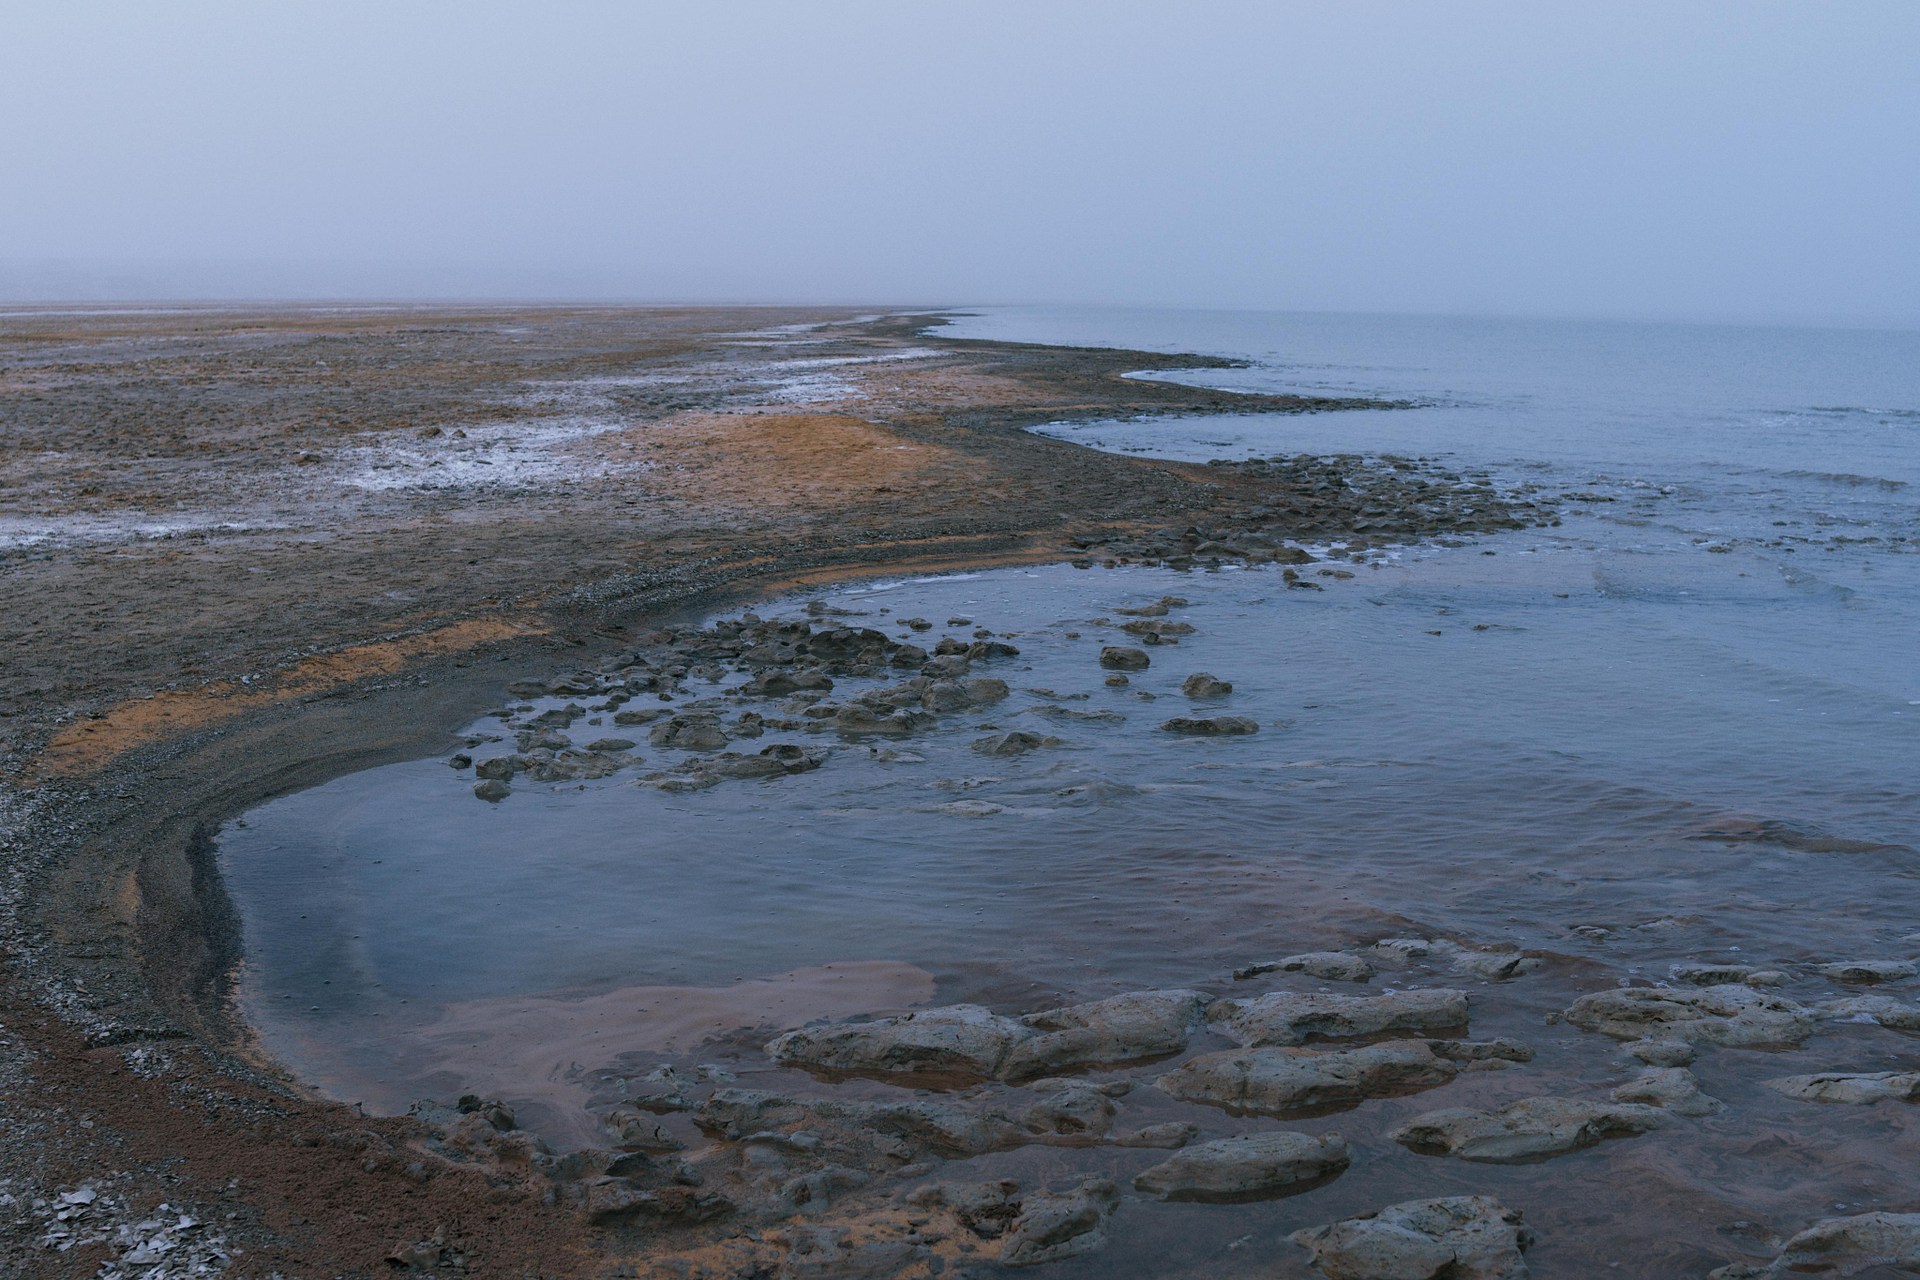 Море в средней азии 4. Аральское море экологическая катастрофа. Песчаная дамба Приаралья. Засохшее море в средней Азии. Приаралье и его проблемы.